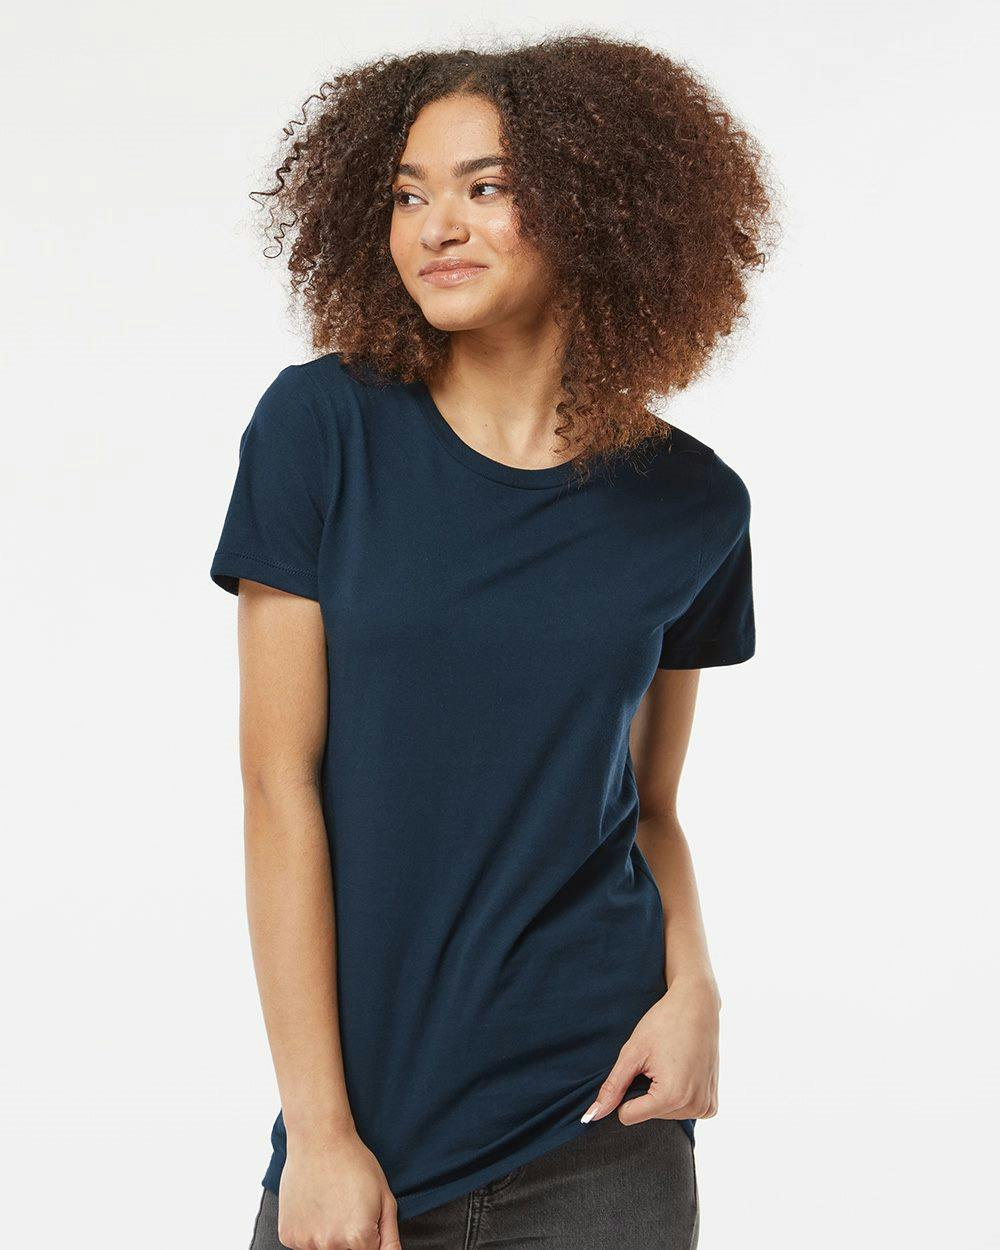 Image for Women's Premium Cotton T-Shirt - 516